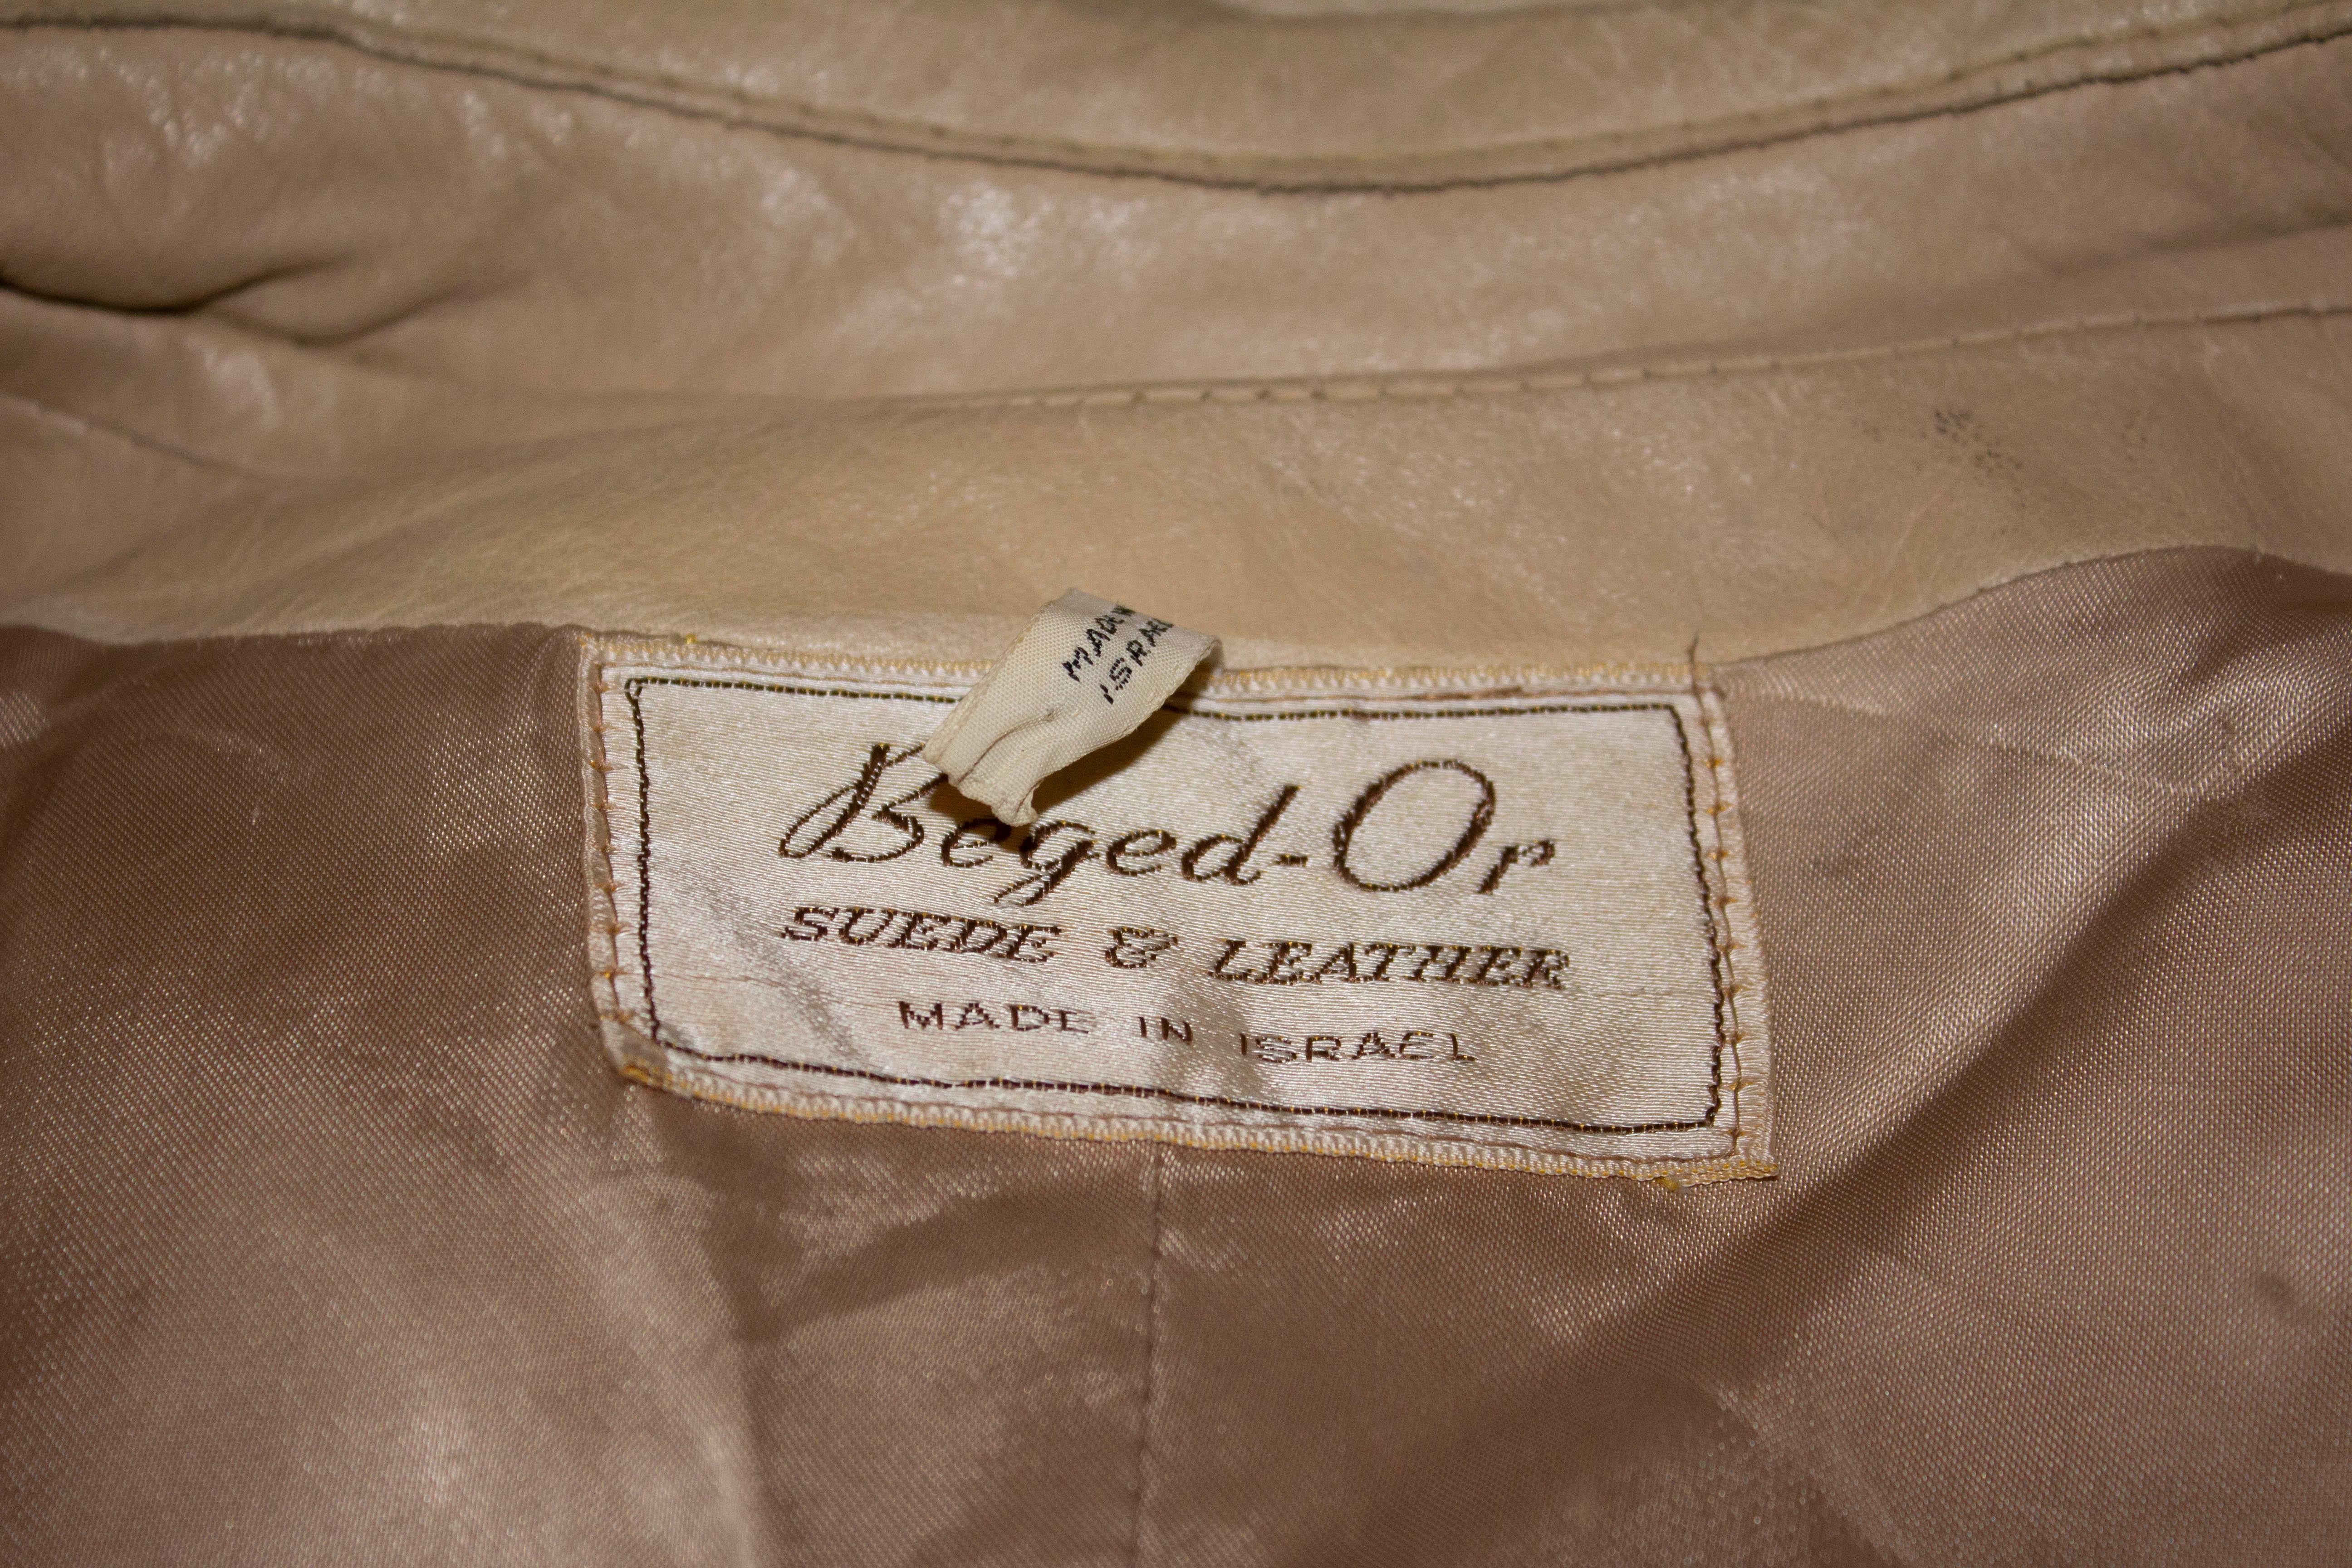 Ein Klassiker aus Leder  trenchcoat von Beged d'Or. Der Mantel ist gefüttert  aber der Gürtel fehlt.
Größe 54 Maße: Brustumfang bis zu 42'', Taillenumfang bis zu 42'', Länge 44''